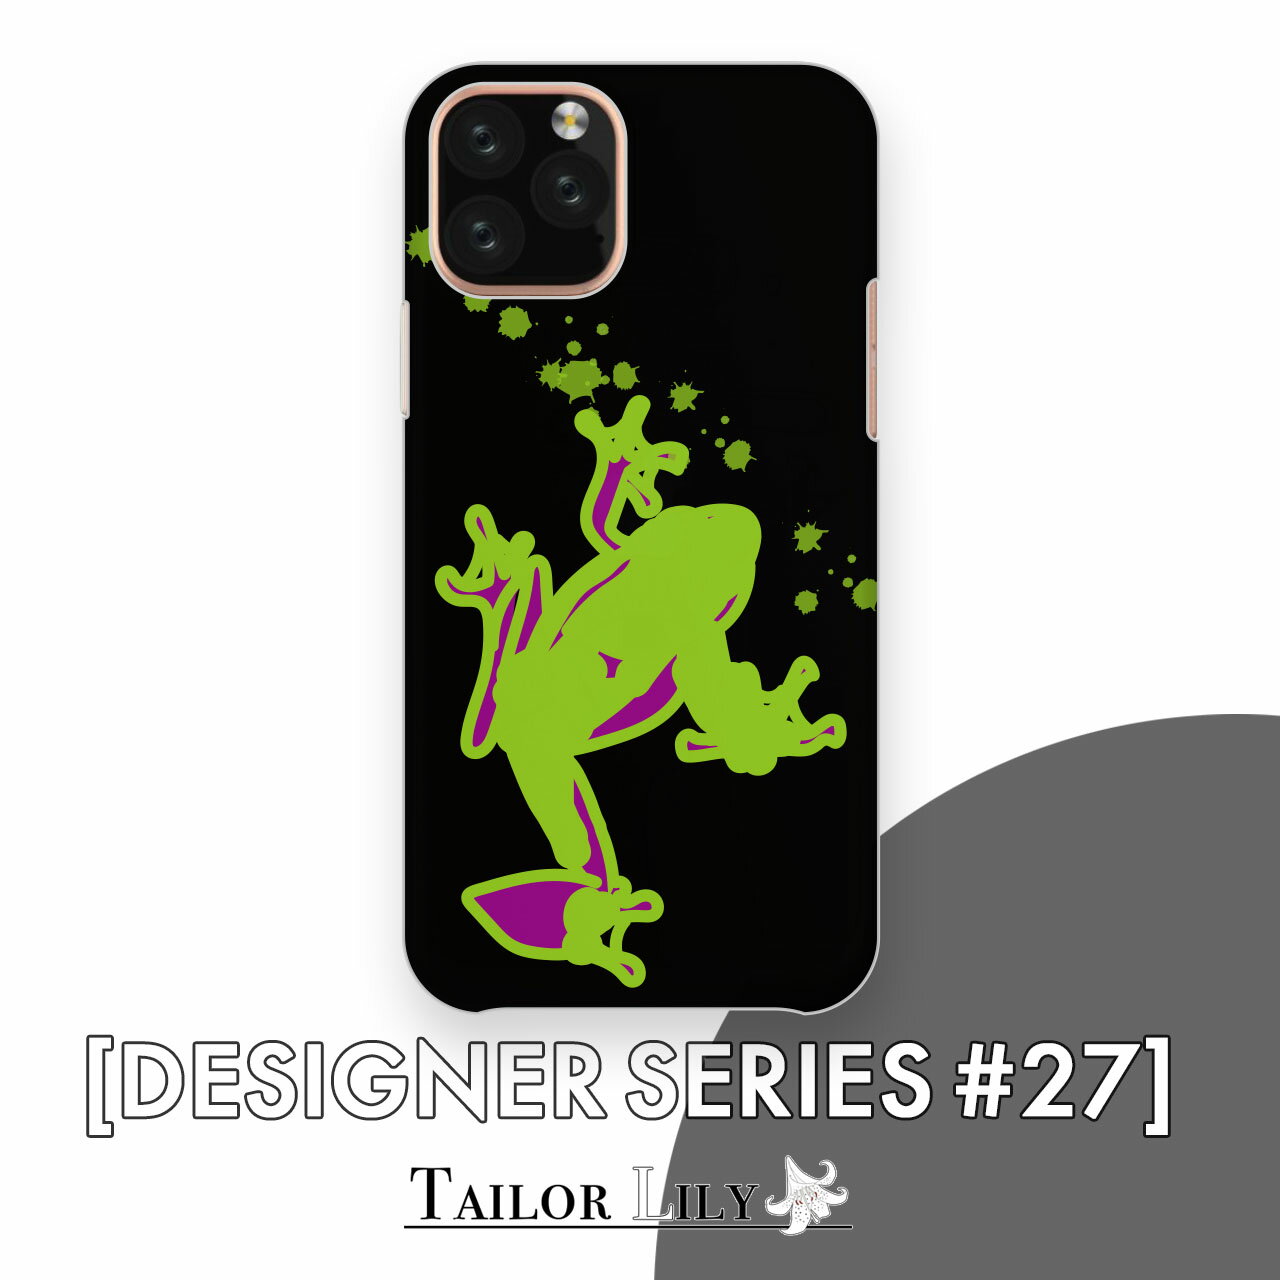 《DESIGNER SERIES #27》  全機種対応 カエル 爬虫類 個性的 くすみ 派手 シンプル ハードケース おしゃれ 背面ケース 背面型 オリジナルデザイン Tailor Lily テイラーリリー iPhone Galaxy Xperia AQUOS